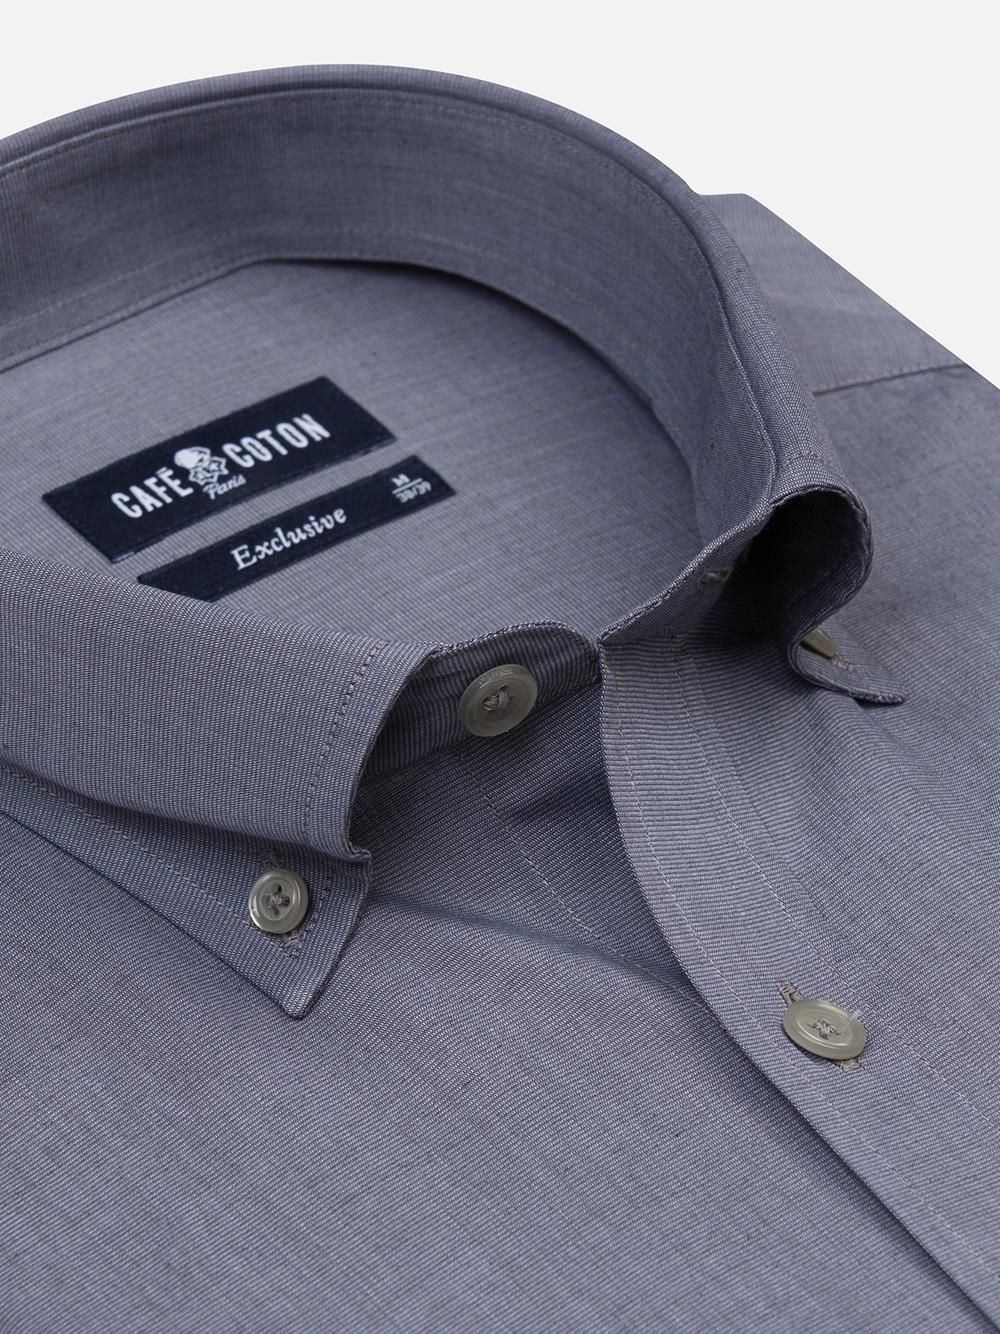 Graues tailliertes Hemd aus Garn - Button-Down-Kragen